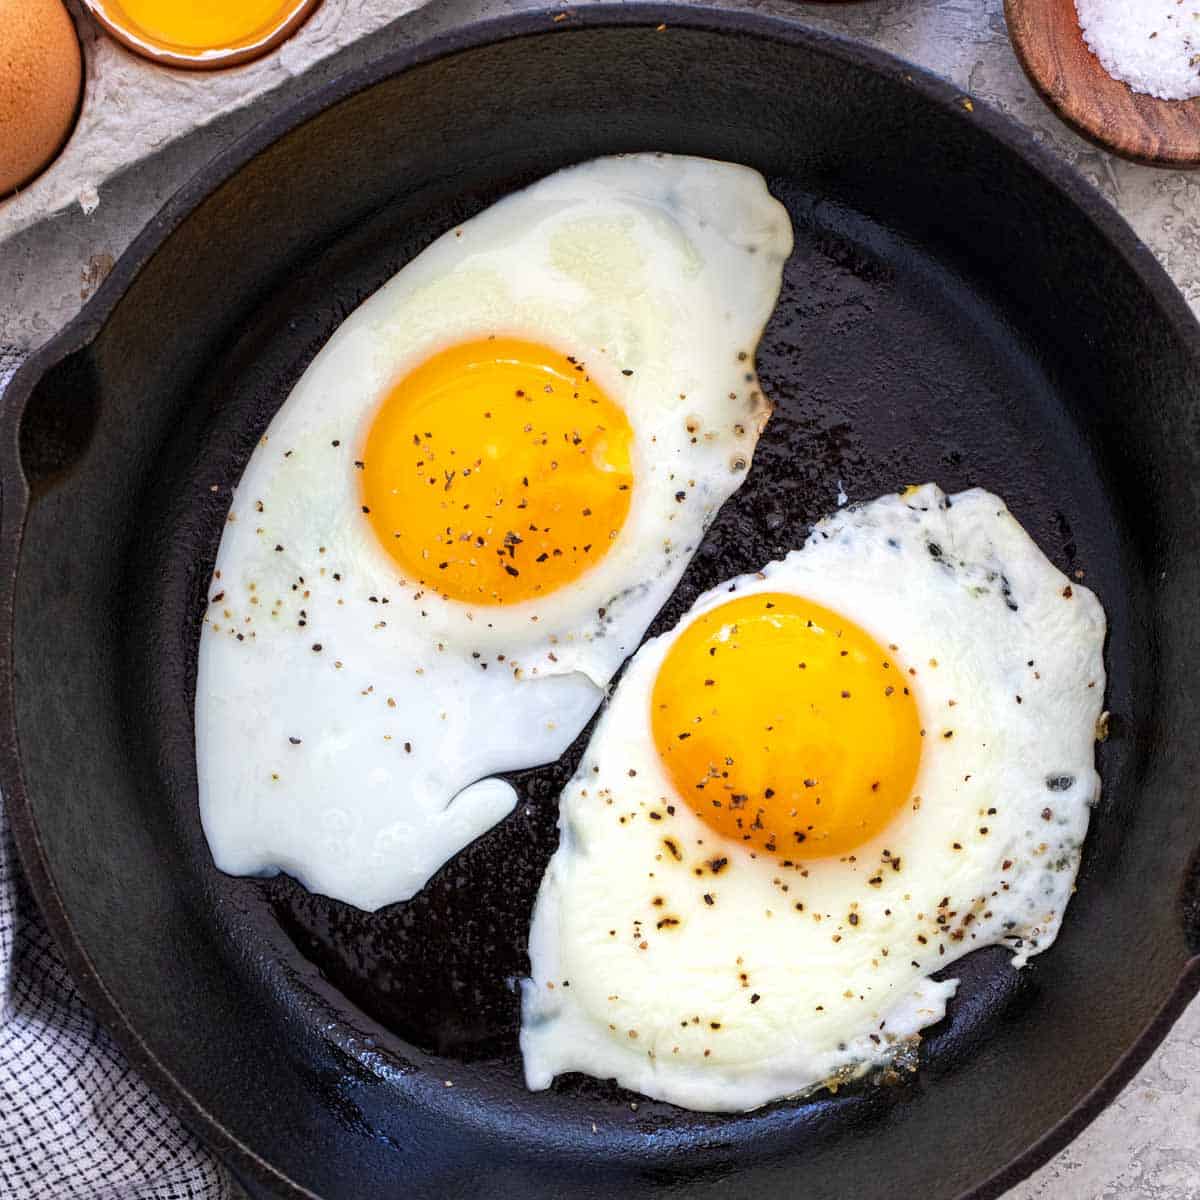 Eggs boiled  - omelette